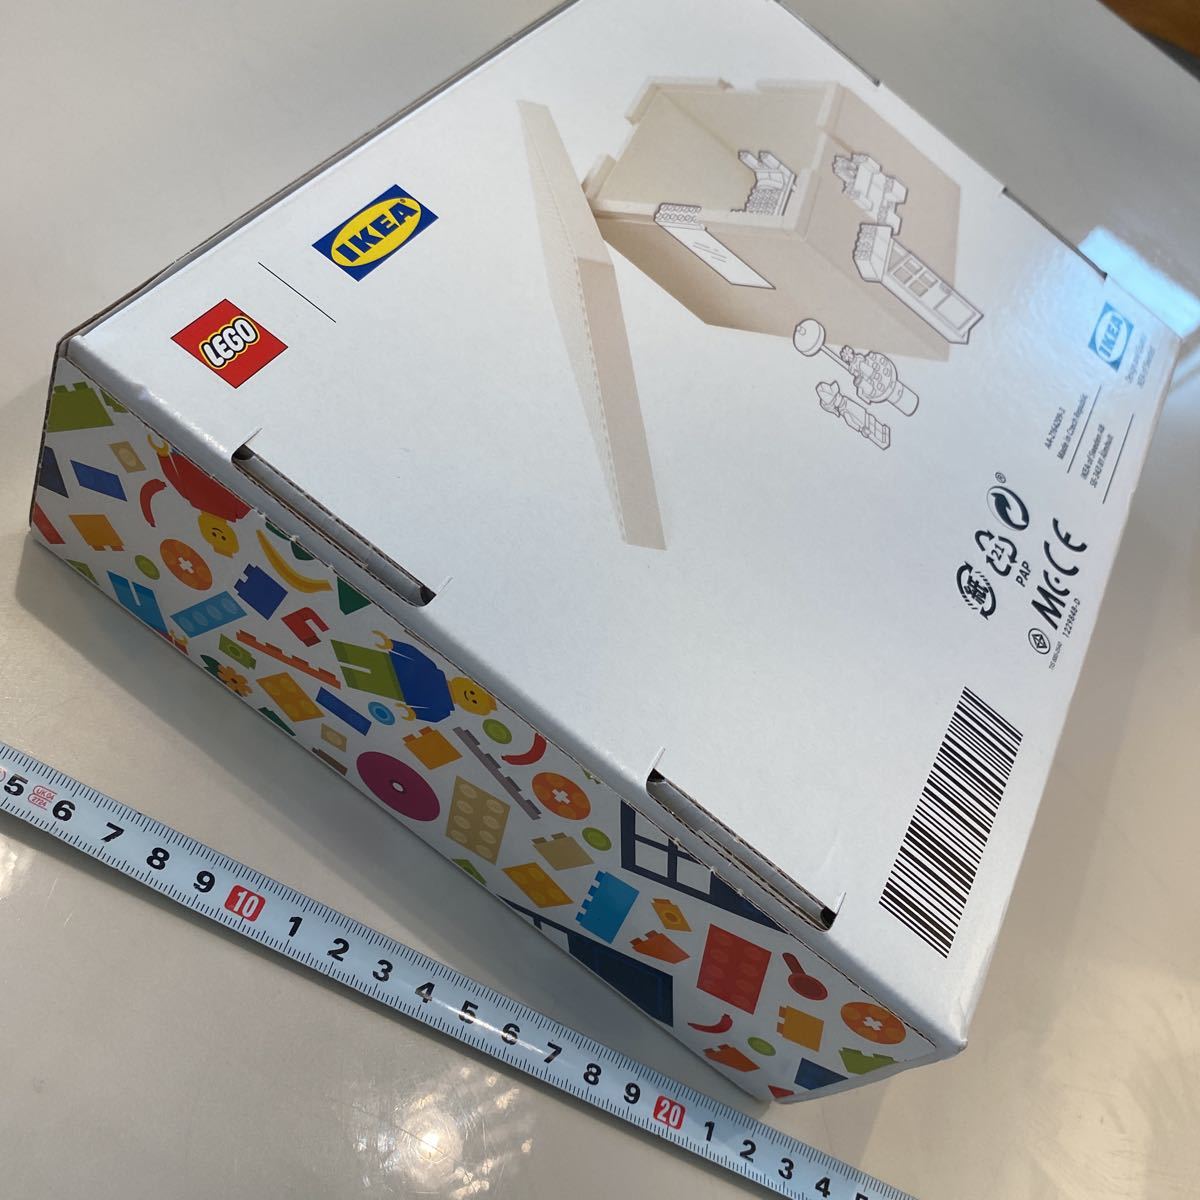  нехватка товара! наличие незначительный!IKEA&LEGO box * 26x18x12 cm* средний размер новый товар Yamato Transport анонимность отправка 1735